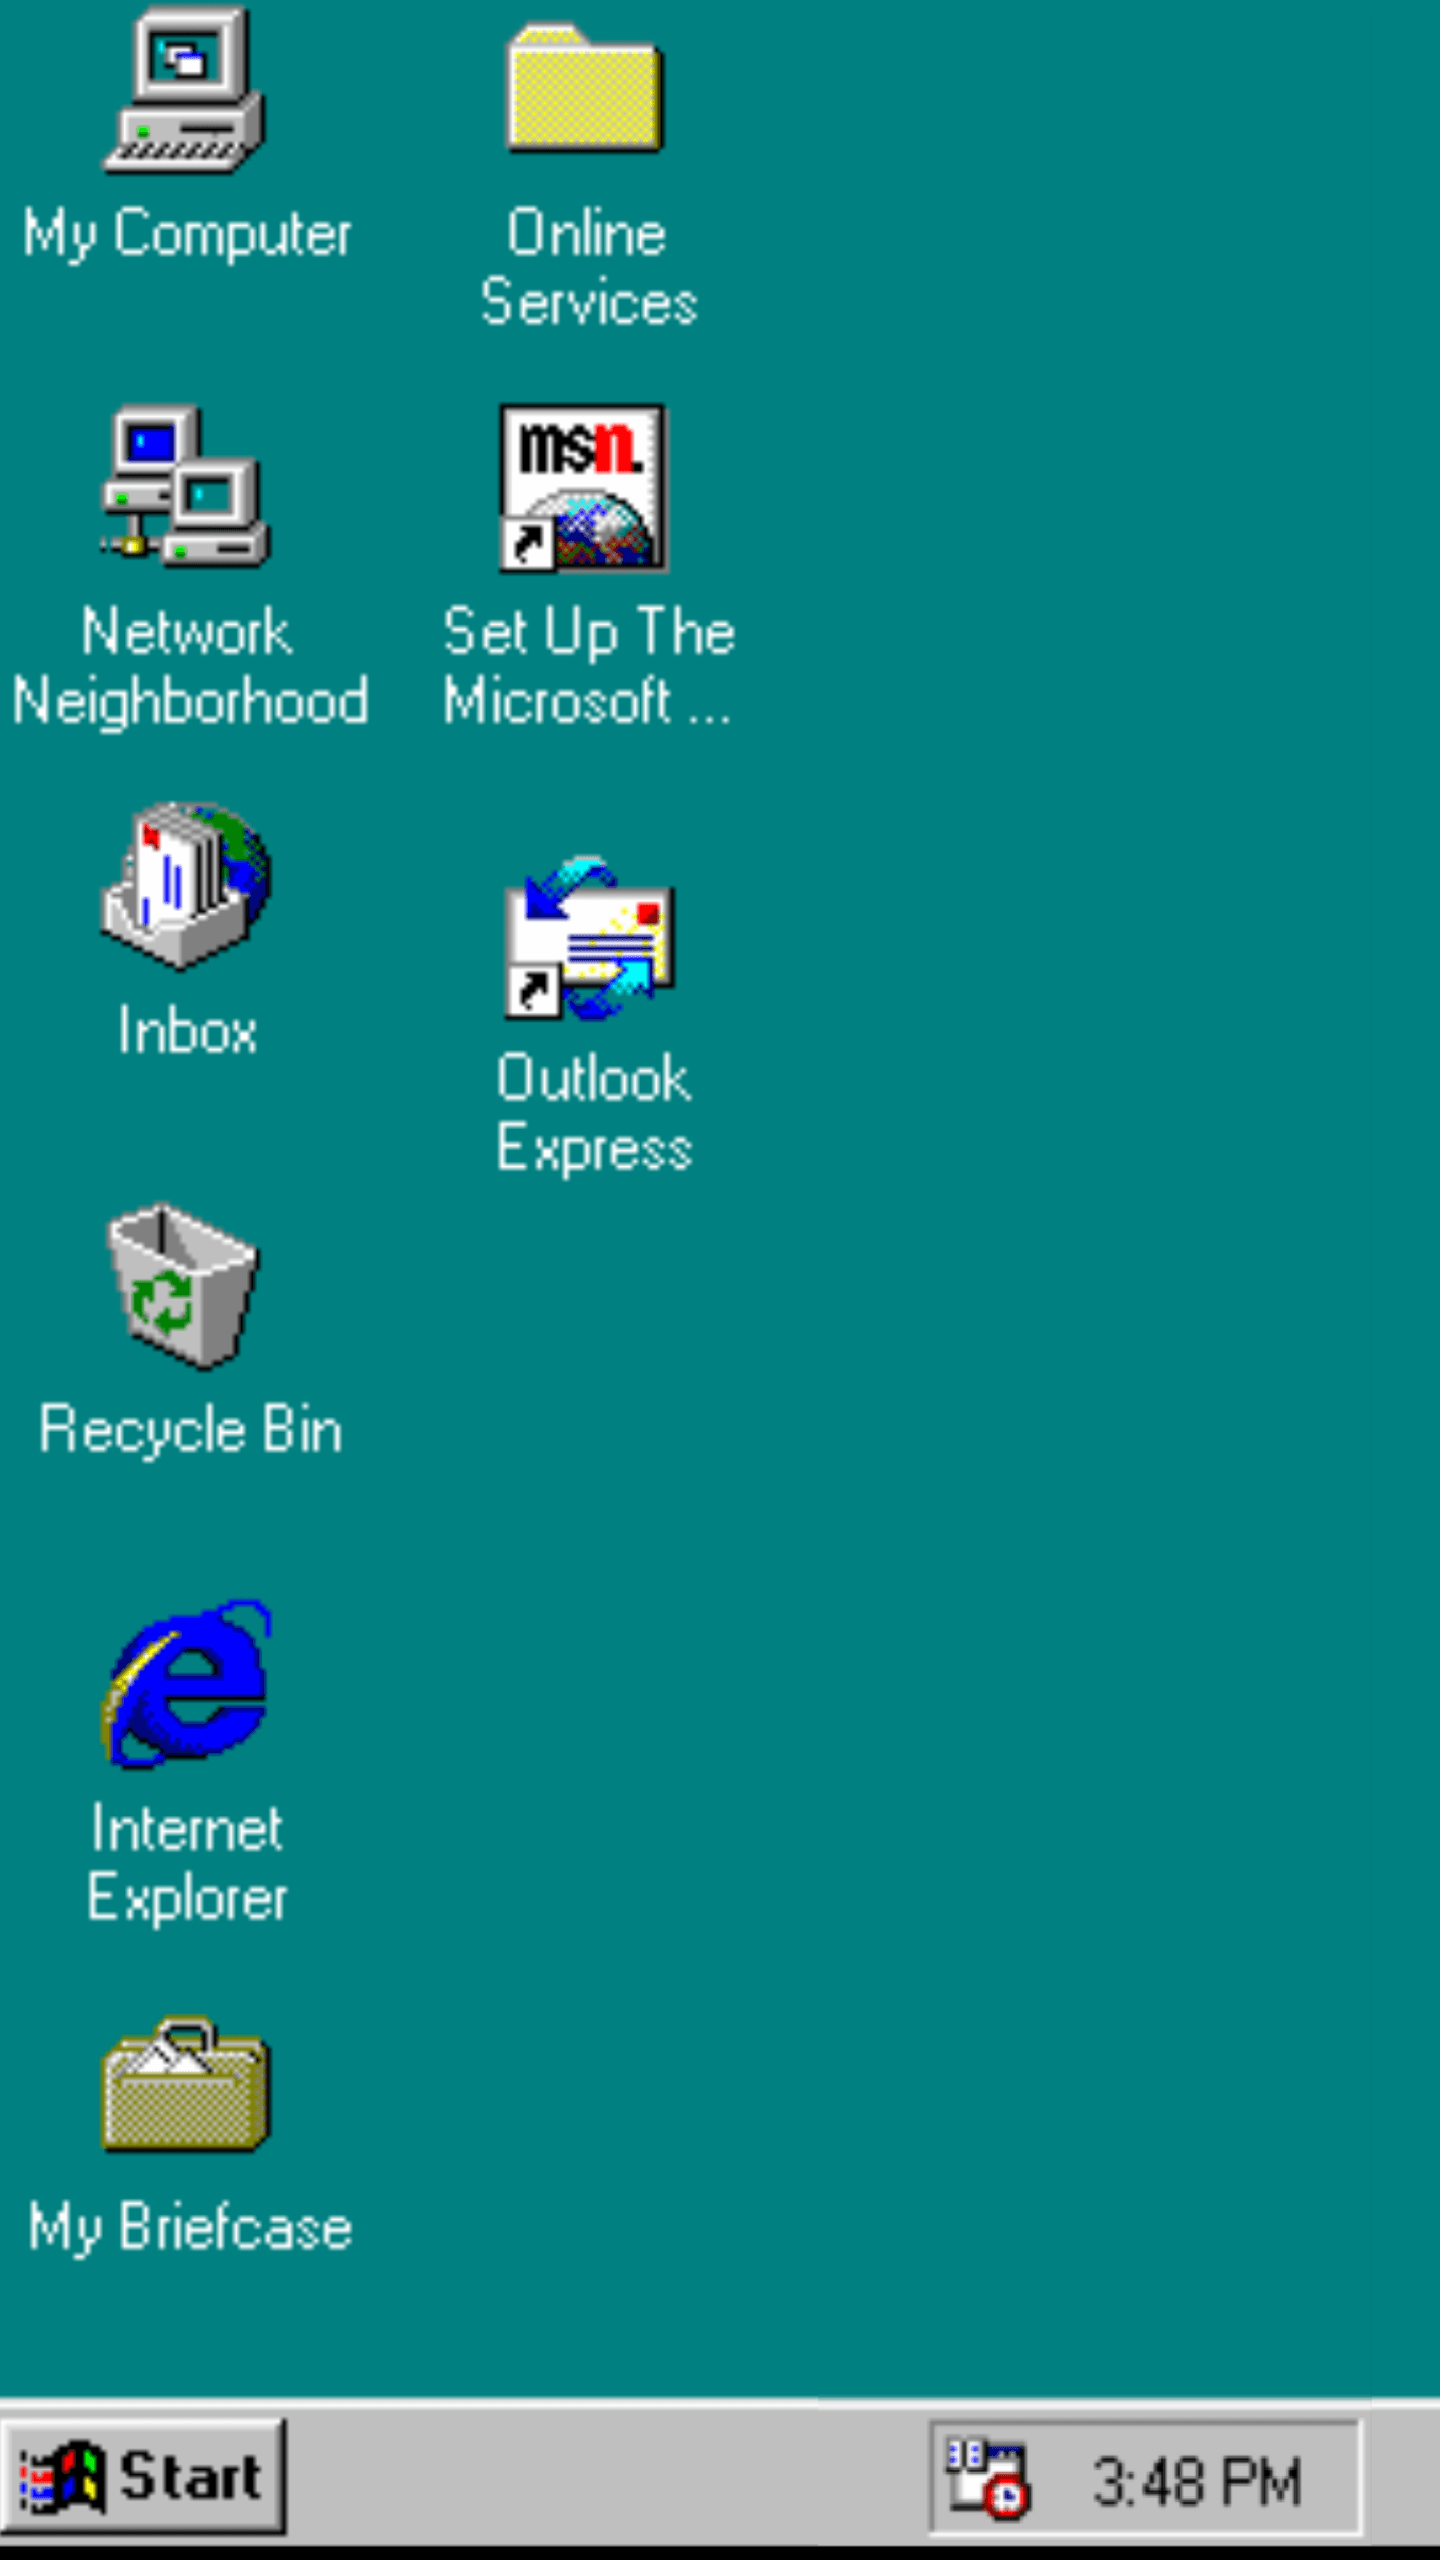 Hình nền mặc định của Windows 95 đã trở thành một lịch sử bởi sự đơn giản và thanh lịch của nó. Nếu bạn muốn trở lại quá khứ và trải nghiệm lại cảm giác cũ của Windows, không có gì tốt hơn là sử dụng hình nền mặc định của nó. Hãy truy cập ngay để tìm kiếm bức hình nền yêu thích của bạn.